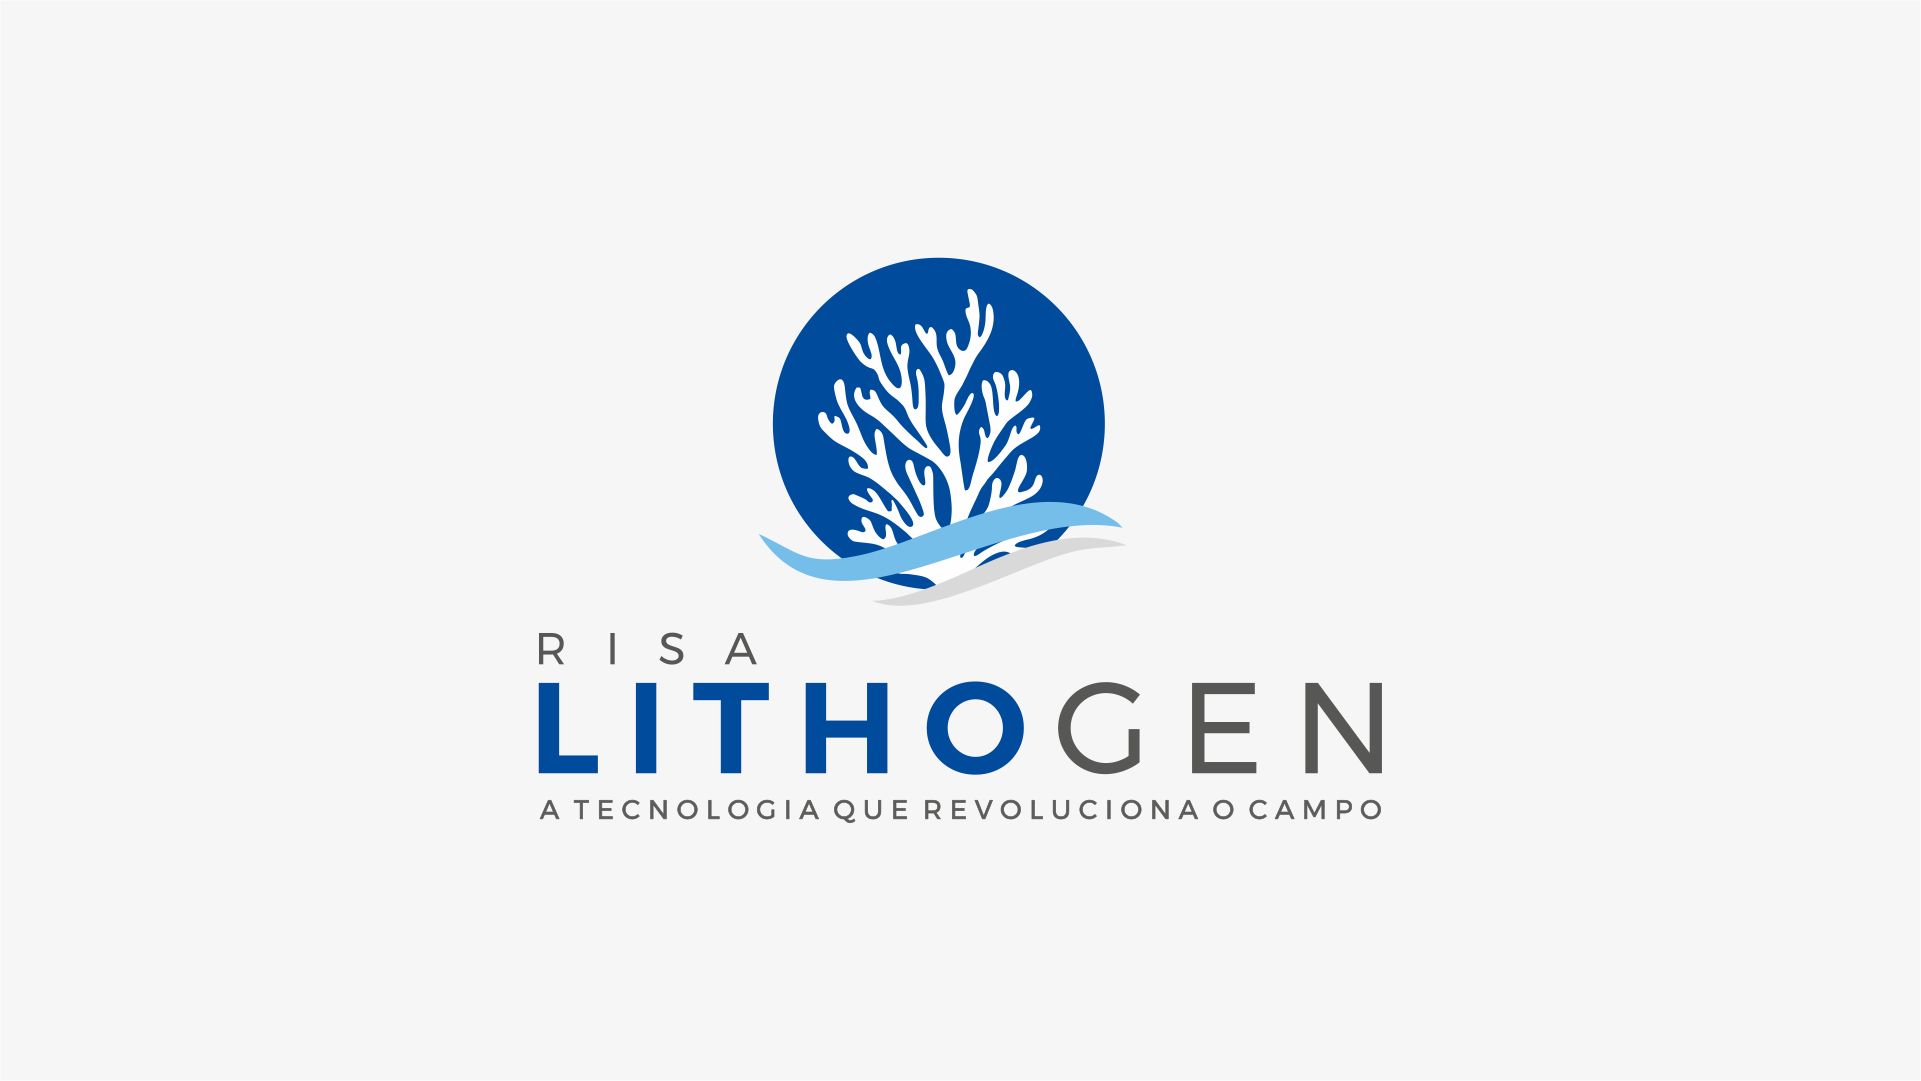 Diretor Presidente da Risa SA, José Antônio Gorgen, fala obre a utilização do Lithigen, tecnologia que está revolucionando o campo